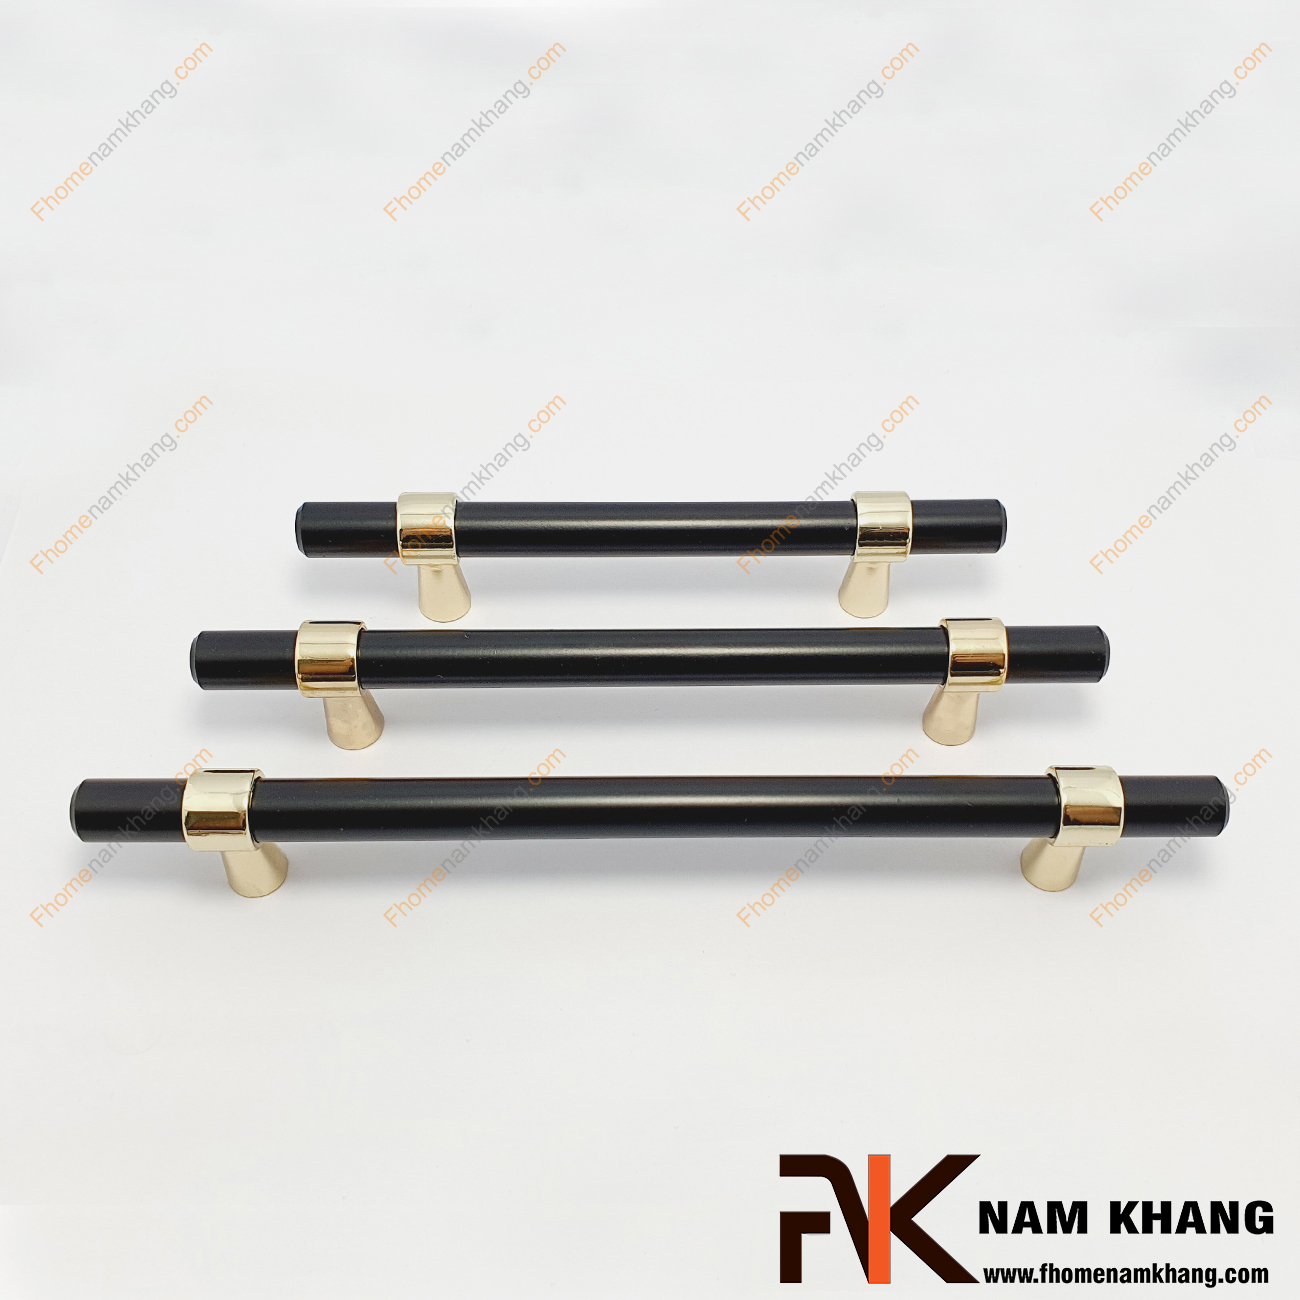 Tay nắm tủ màu đen đế vàng NK207DV-D có thiết kế khá đặc biệt và thu hút khi kết hợp chân đến tròn phối hợp với phần thân là một ống tròn từ chất liệu hợp kim bền chắc.